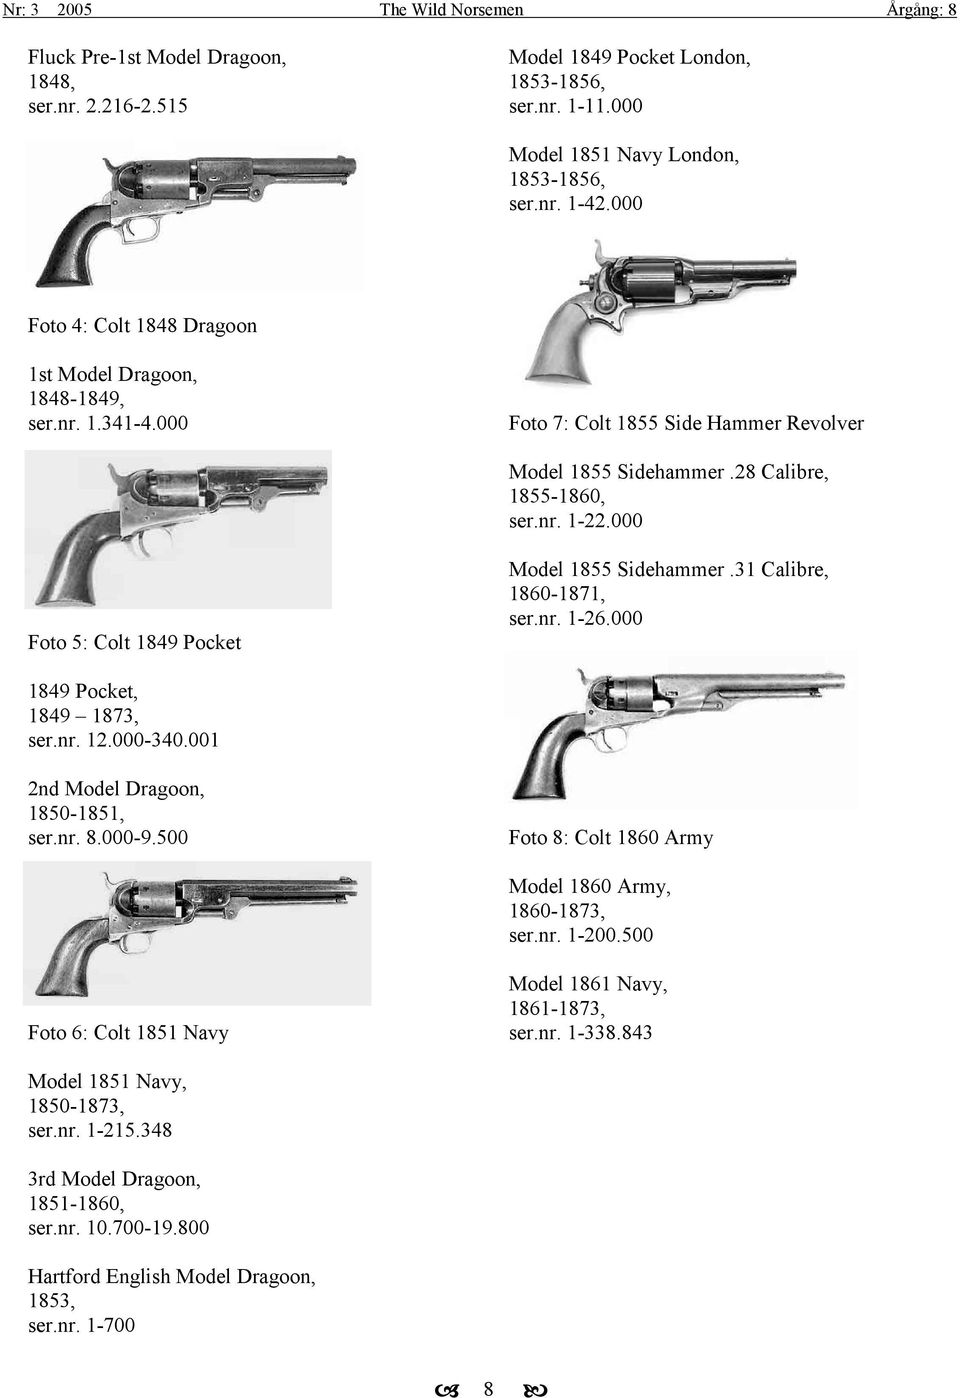 000 Foto 5: Colt 1849 Pocket Model 1855 Sidehammer.31 Calibre, 1860-1871, ser.nr. 1-26.000 1849 Pocket, 1849 1873, ser.nr. 12.000-340.001 2nd Model Dragoon, 1850-1851, ser.nr. 8.000-9.